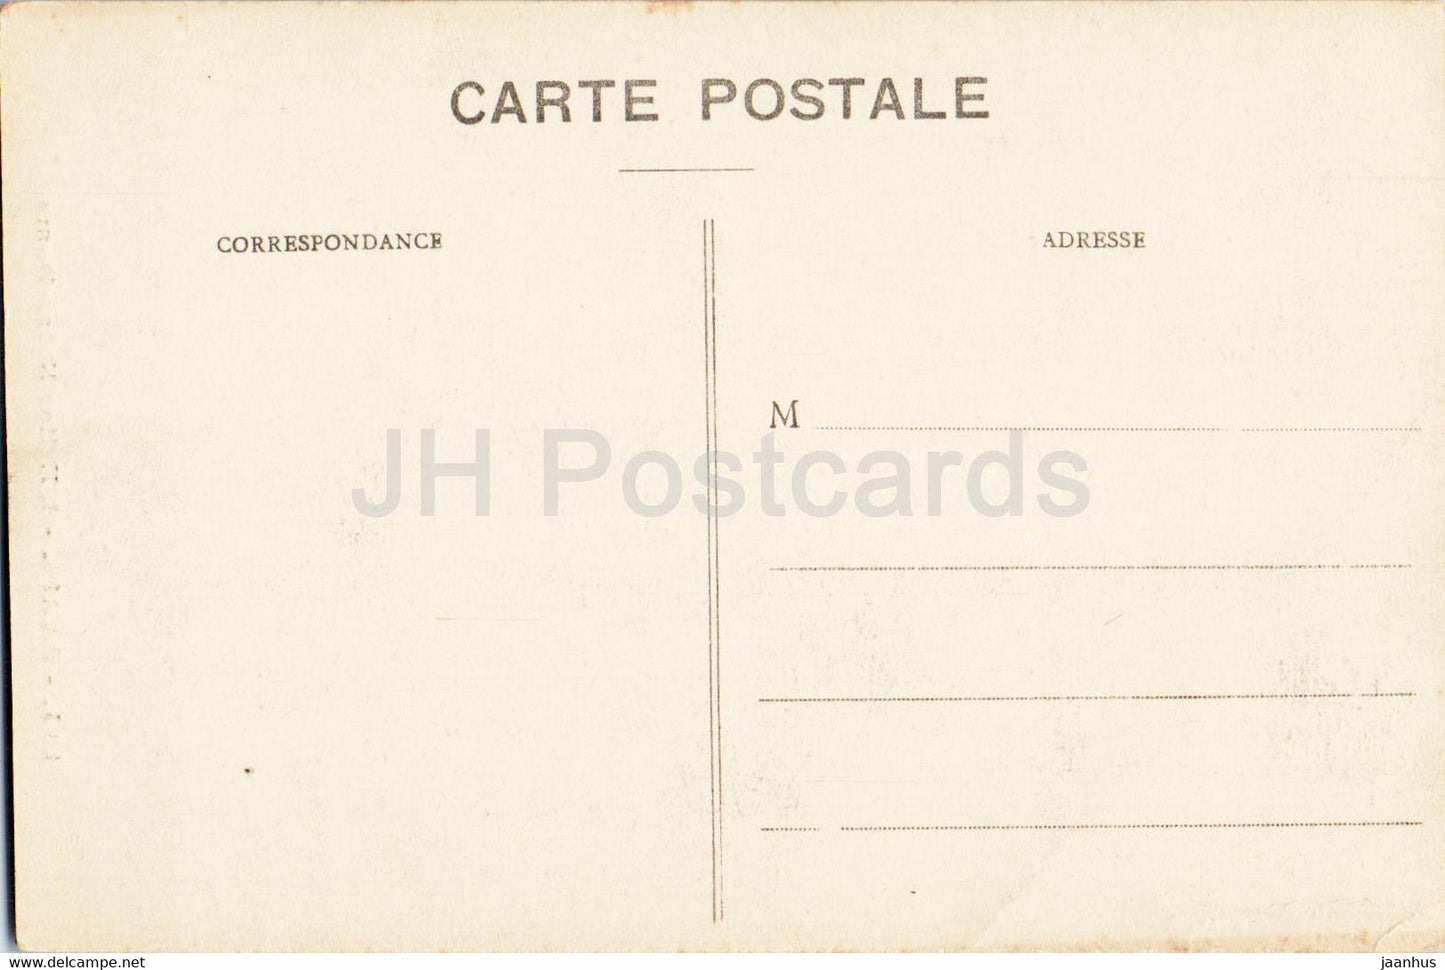 Paris - L'Eglise Notre Dame - 135 - old postcard - France - unused